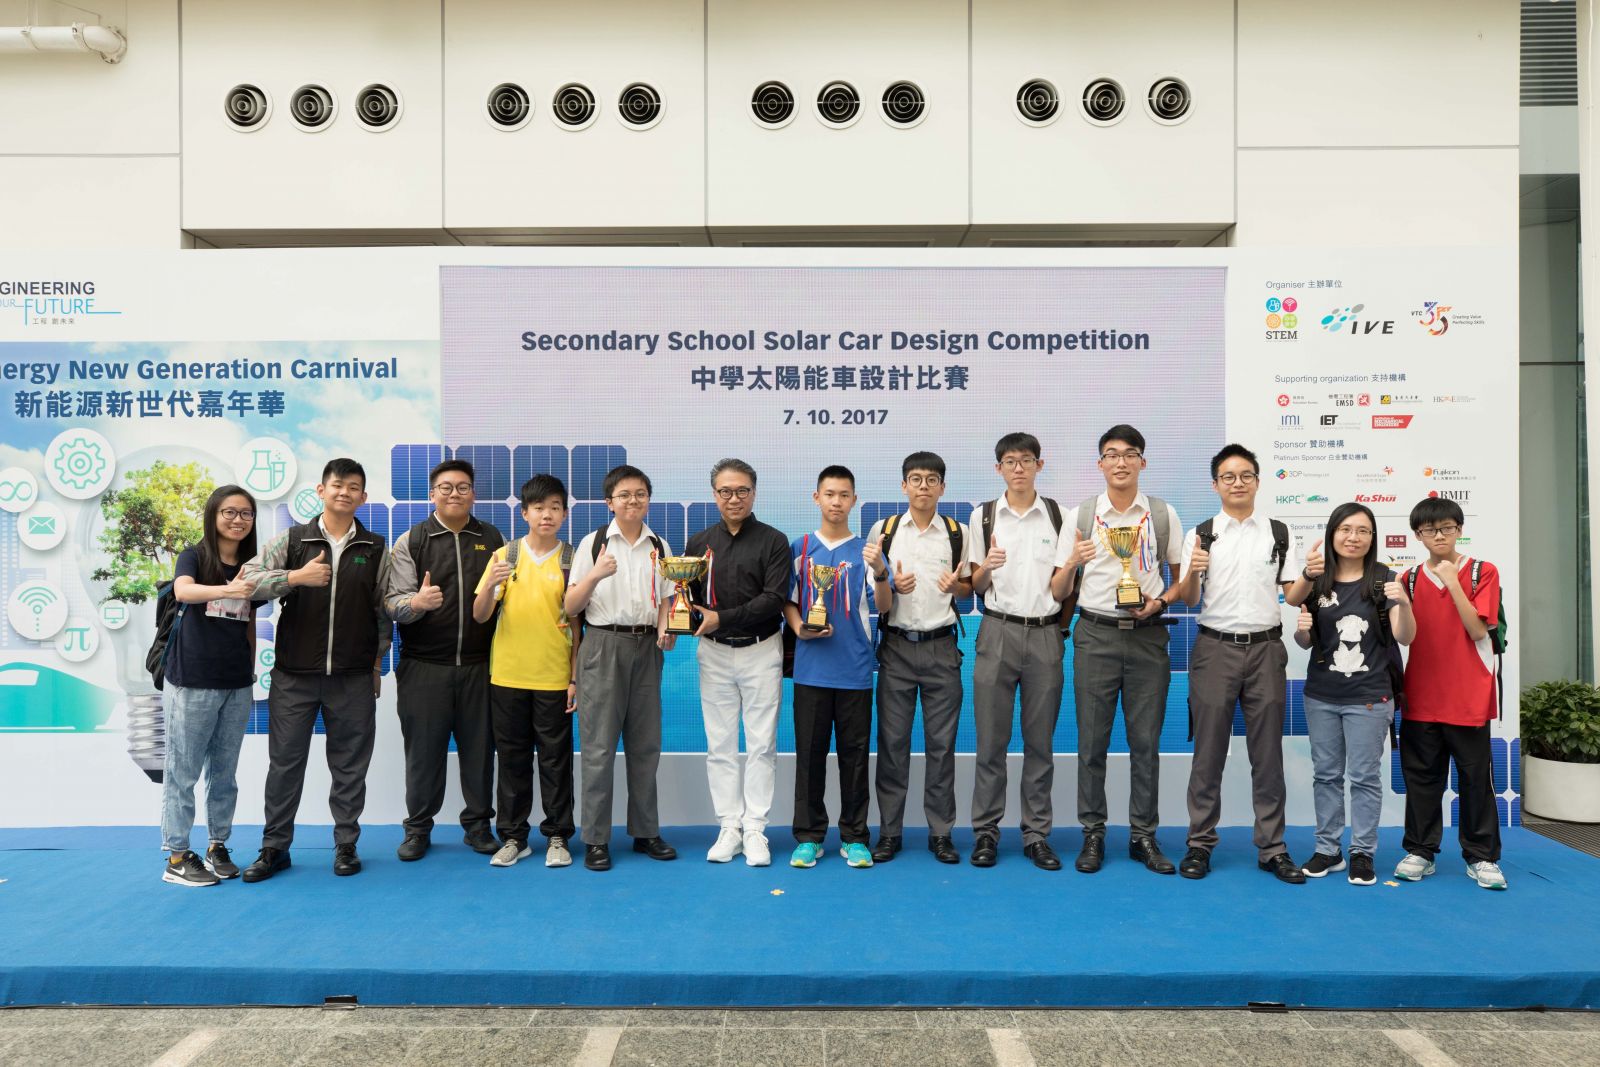 勞工子弟中學三隊奪得「中學小型遙控太陽能車設計比賽」全場總冠軍